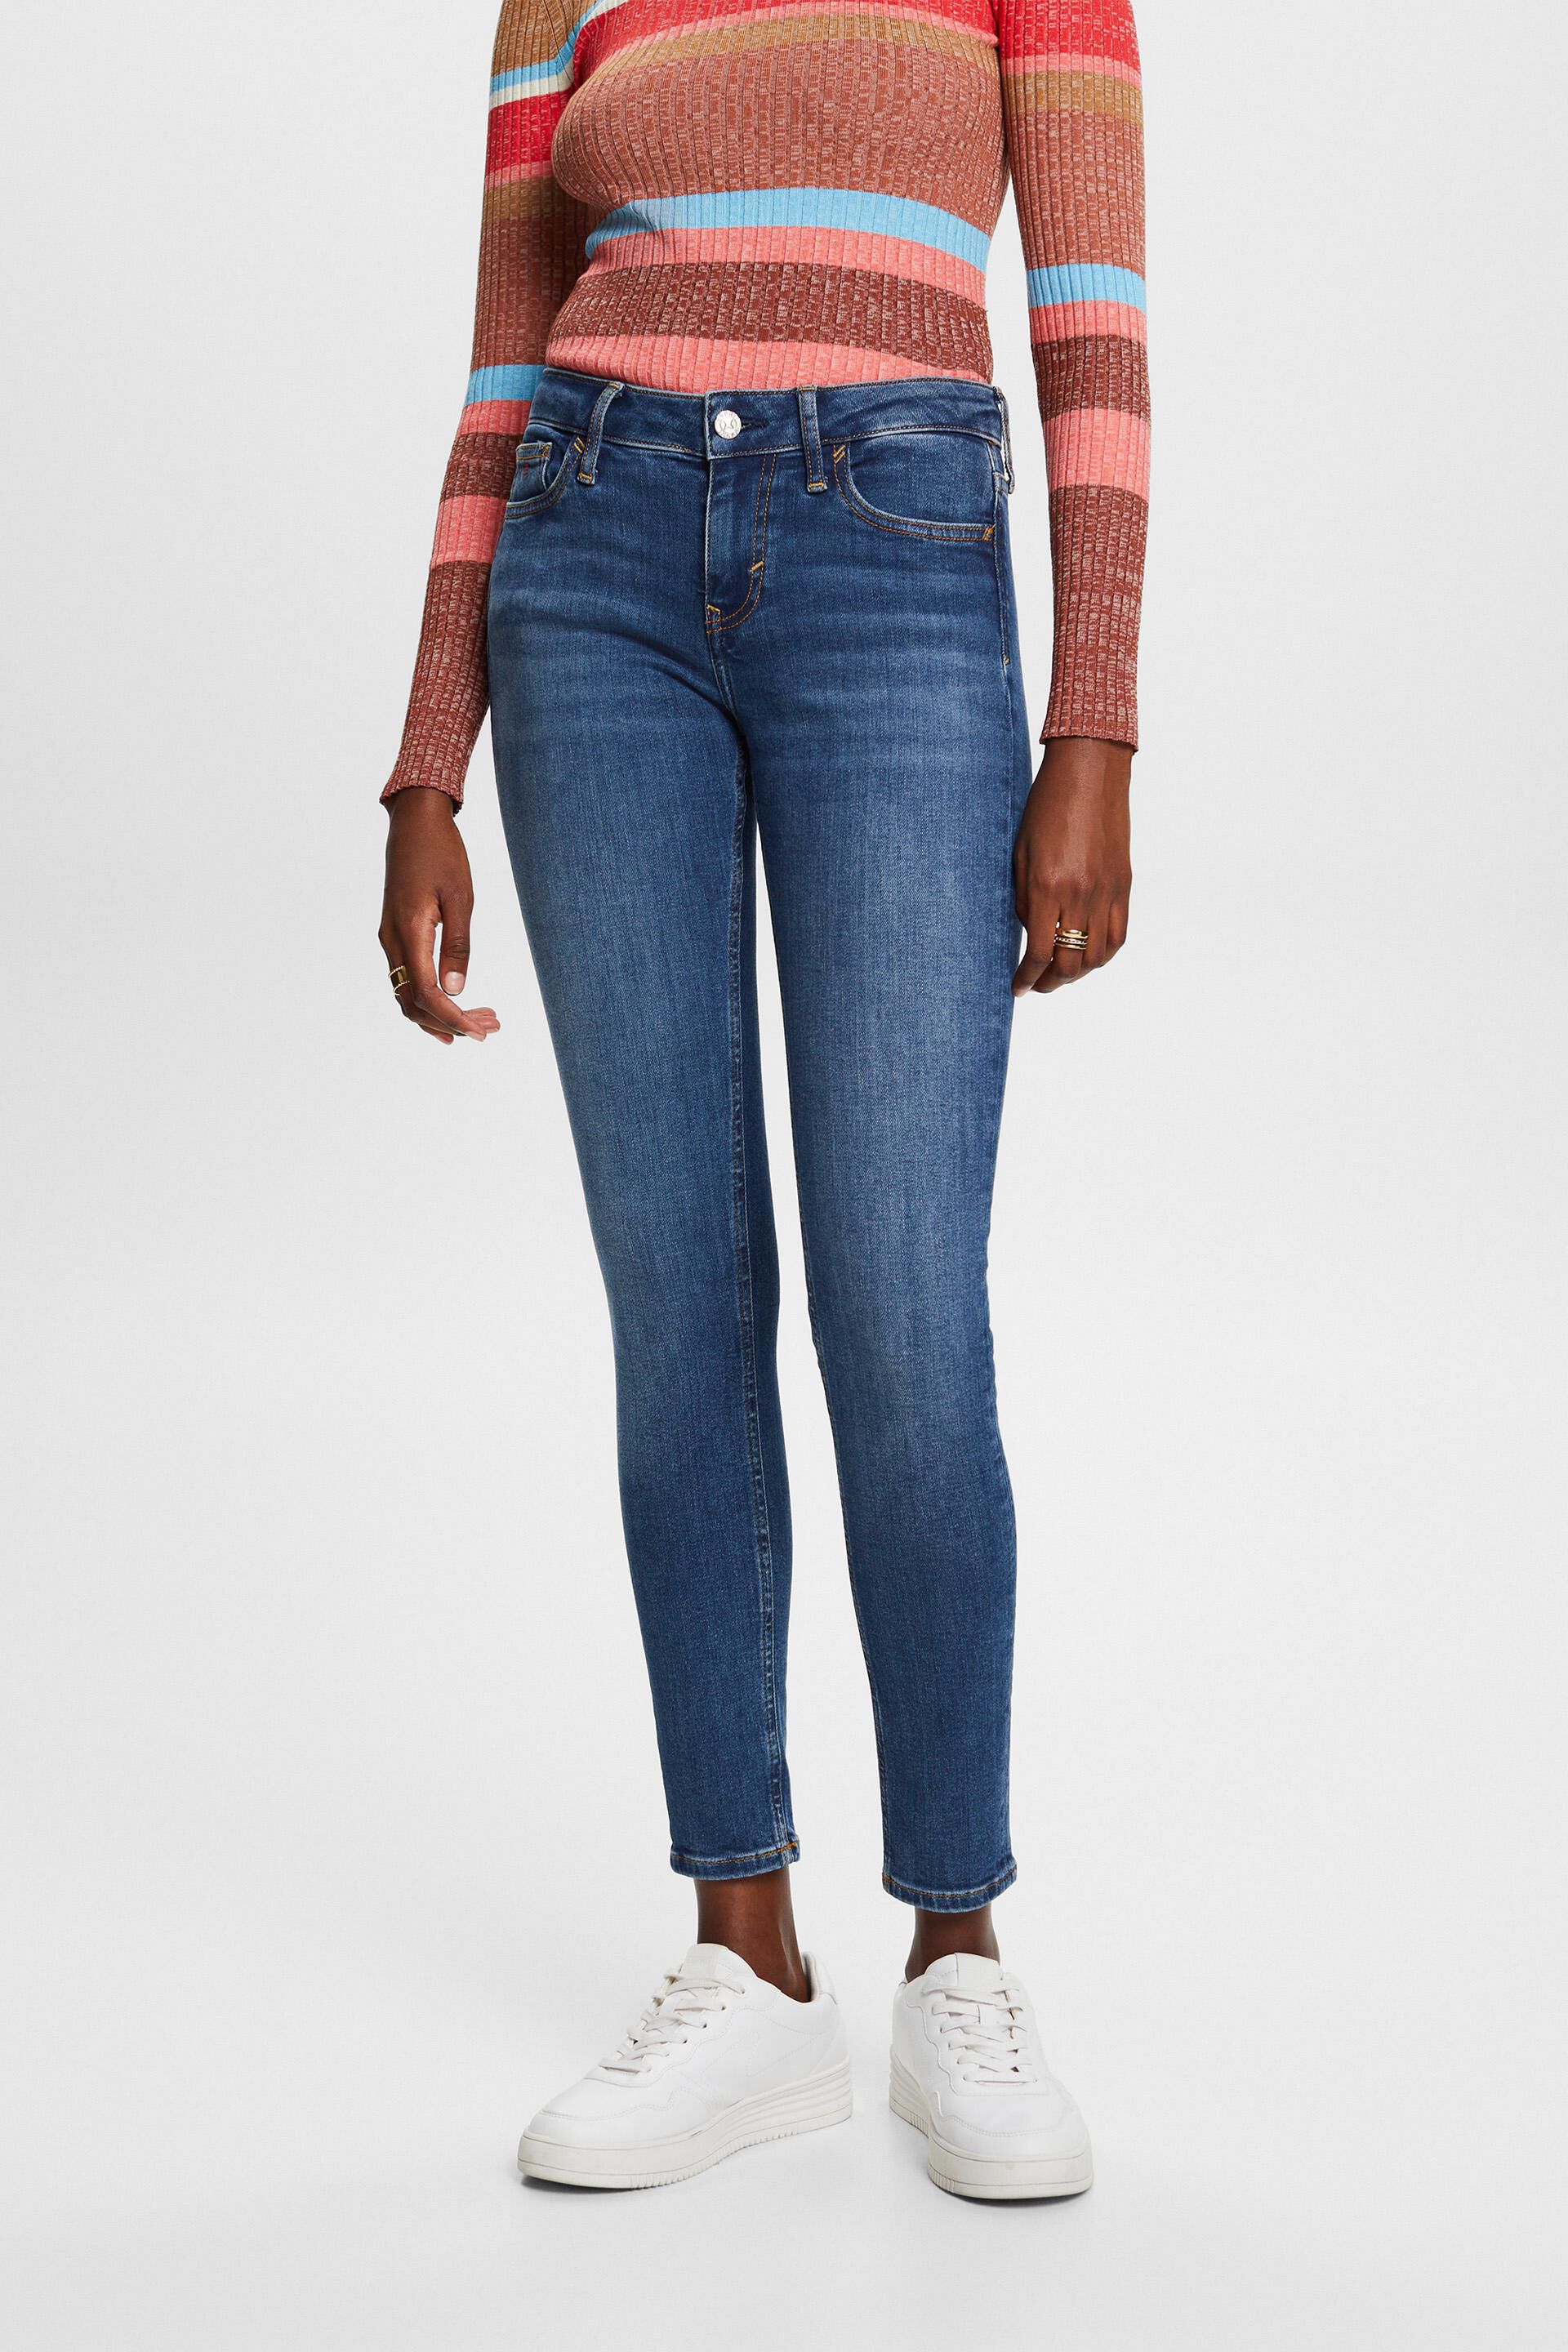 Esprit Damen Premium mid-rise skinny jeans